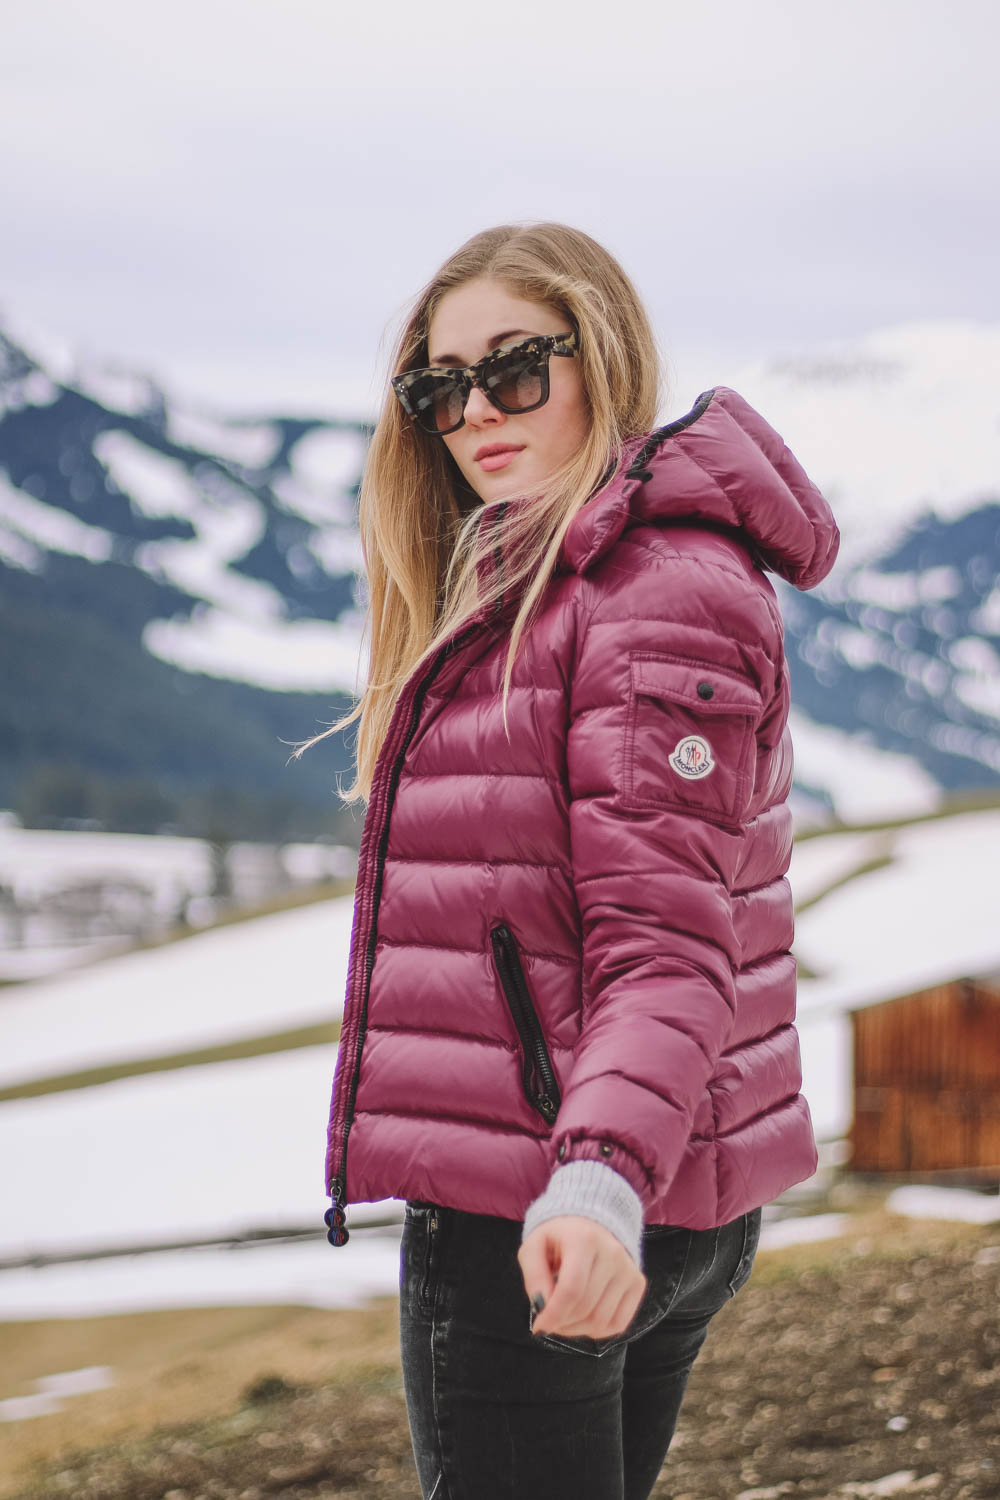 BLOG YOUR STYLE: Winter Outwear auf dem österreichischen Lifestyle Blog Bits and Bobs by Eva.